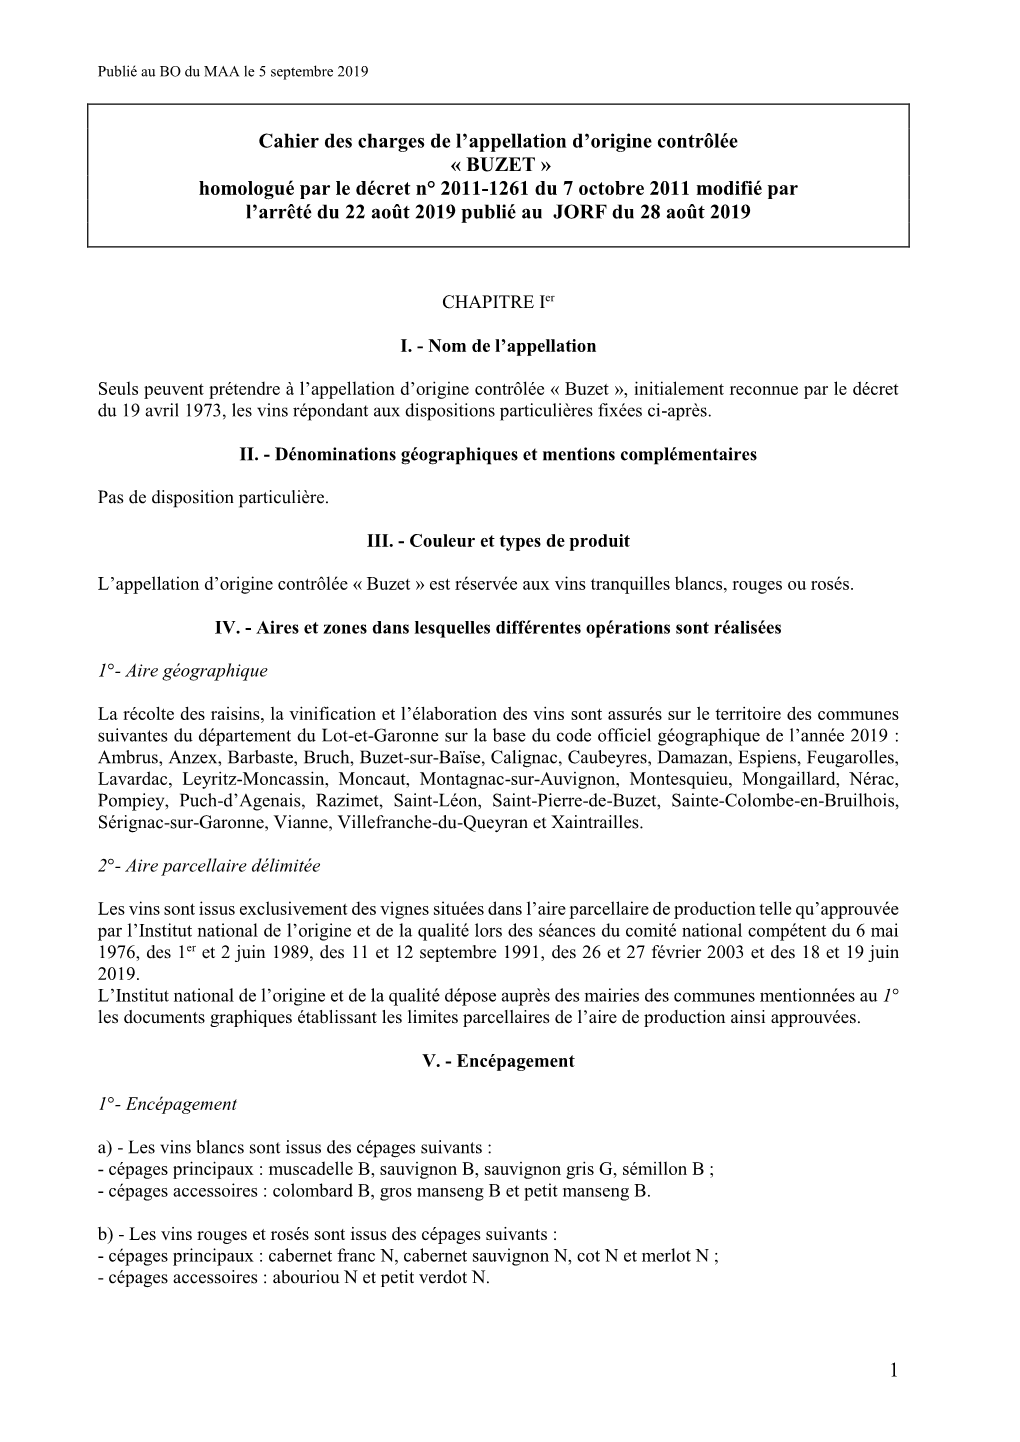 Cahier Des Charges De L'appellation D'origine Contrôlée Buzet